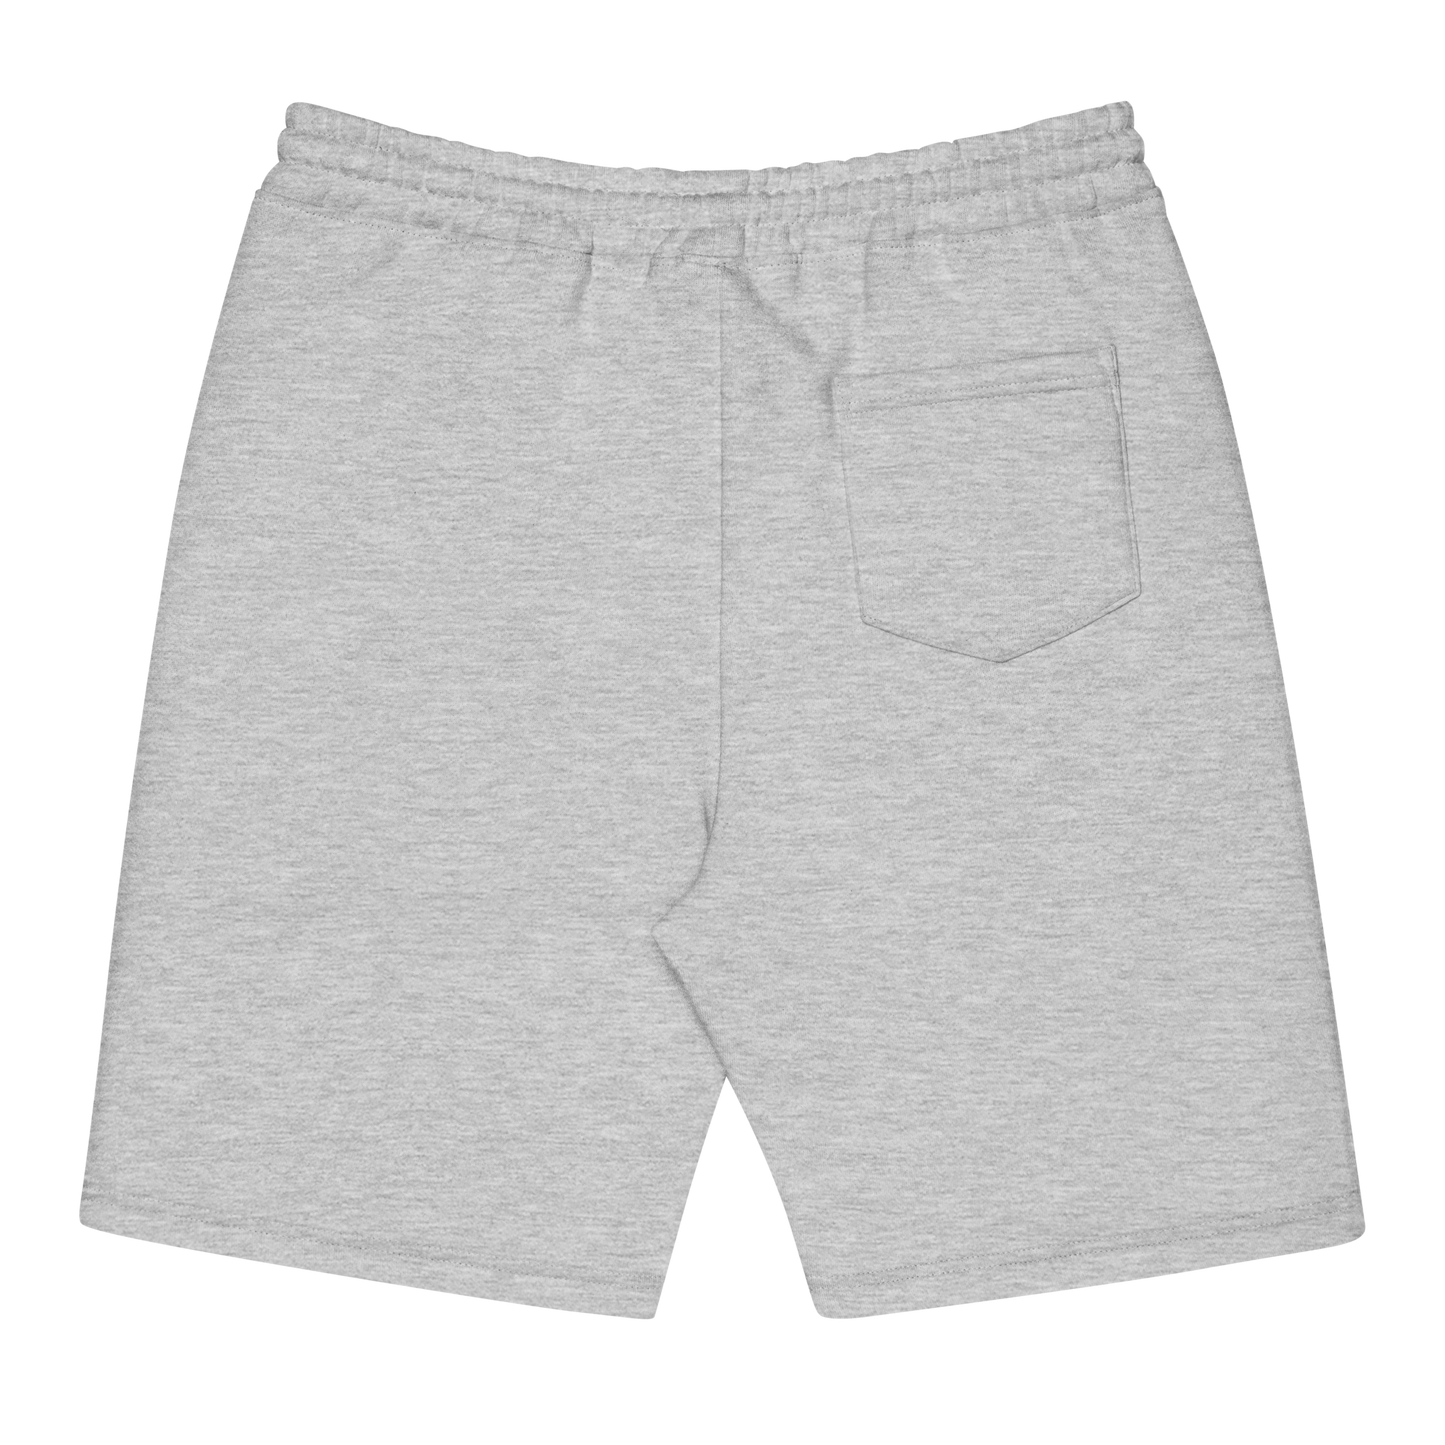 Fudgie Men's fleece shorts